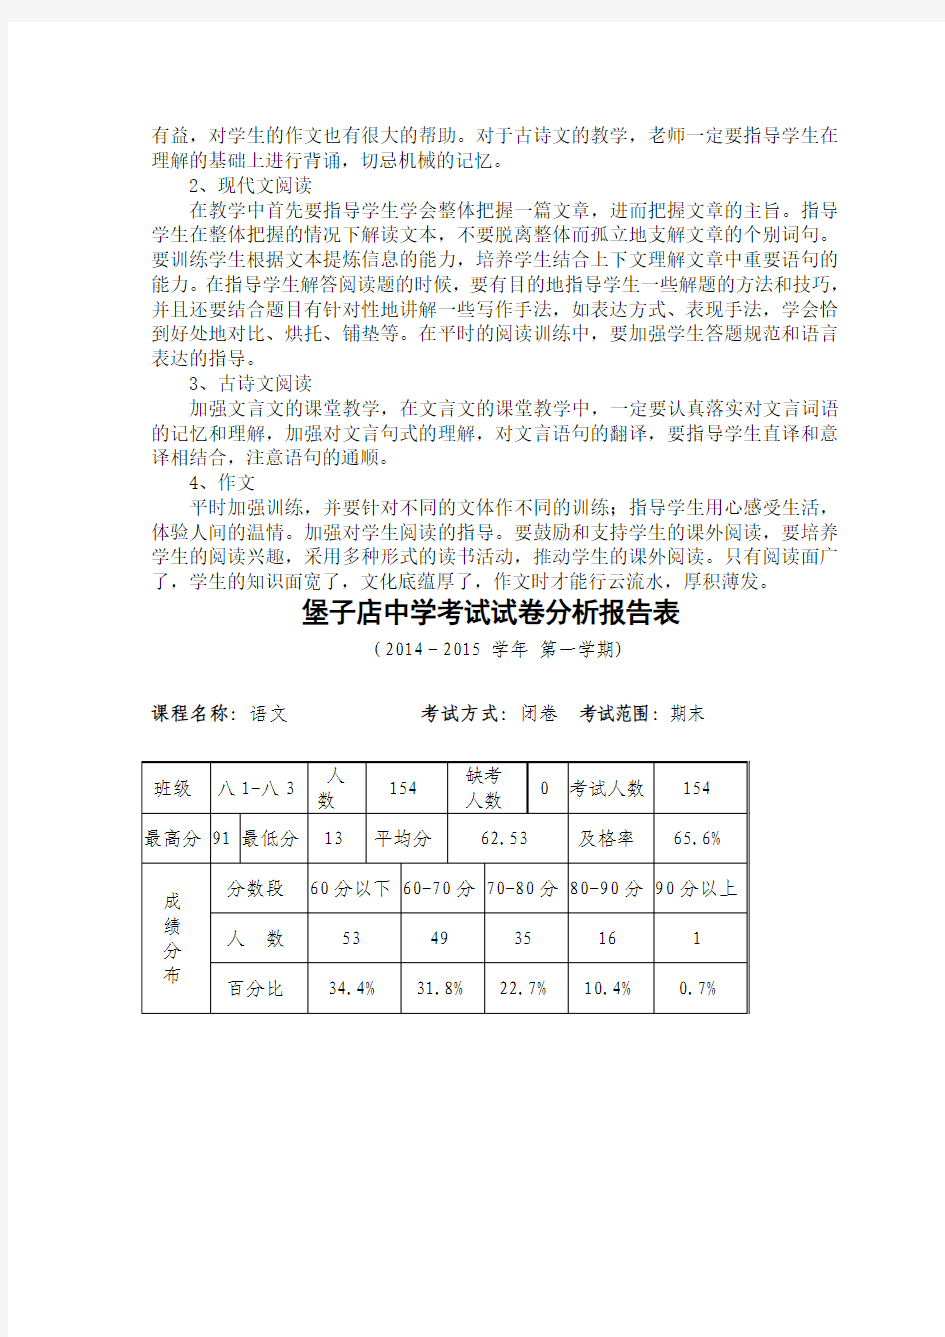 2014-2015年度八年级第一学期语文期末考试分析卞晓楠乌平